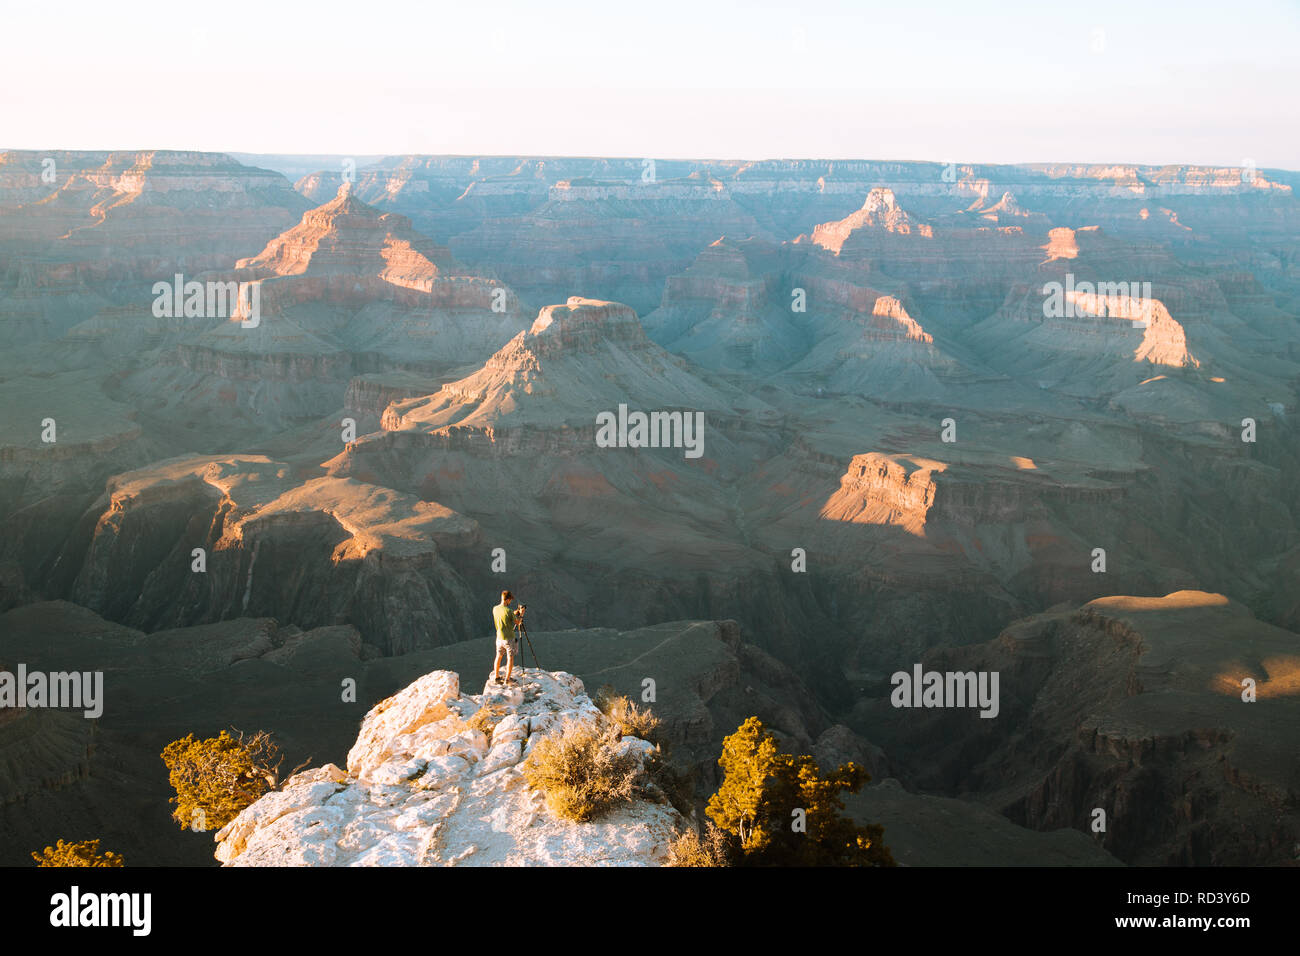 Ein männlicher Fotograf steht auf einer Klippe mit Blick auf den berühmten Grand Canyon National Park bei Sonnenuntergang, Amerikanischen Südwesten, USA Stockfoto